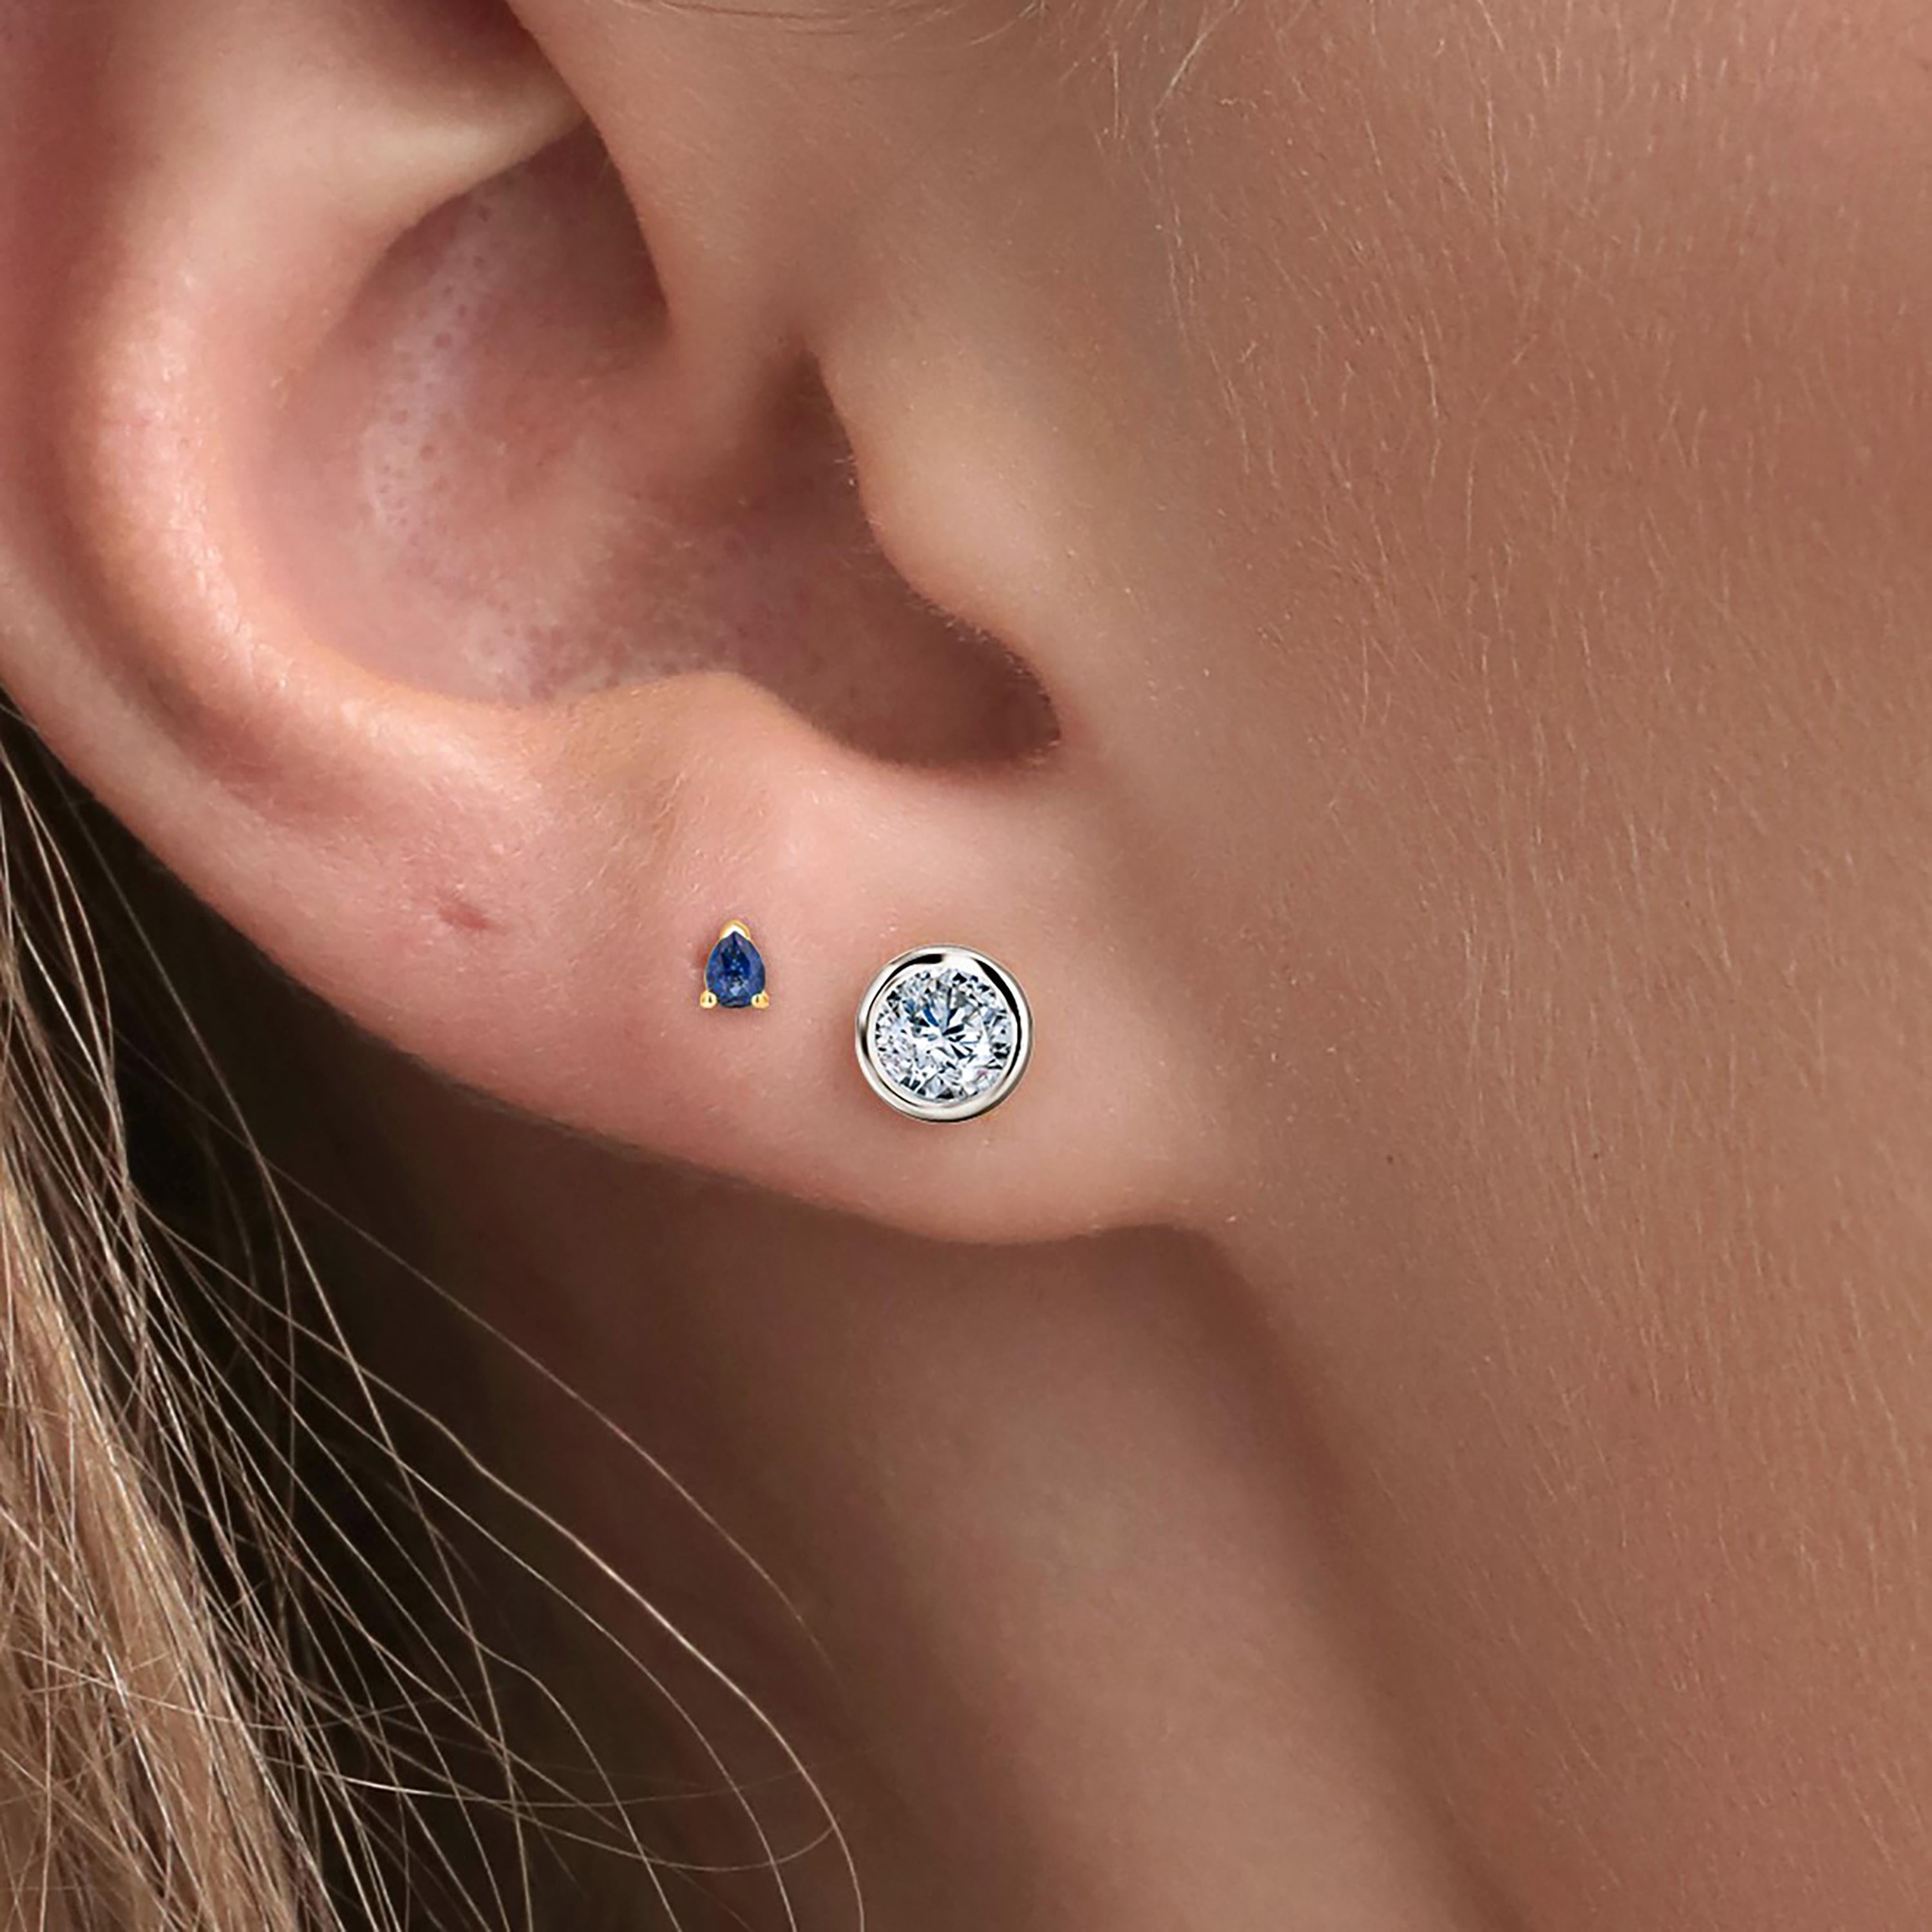 third stud earrings